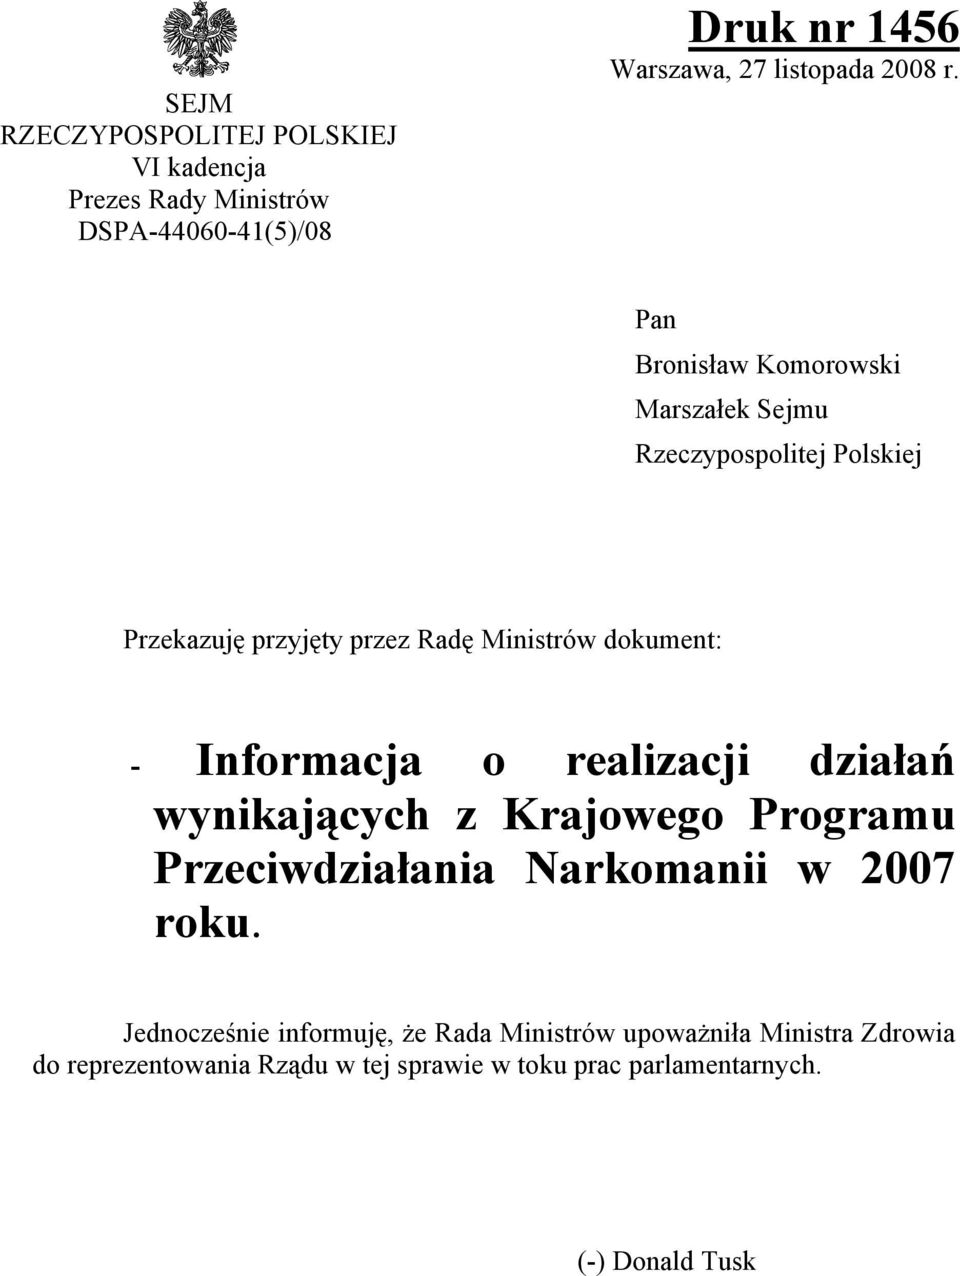 Informacja o realizacji działań wynikających z Krajowego Programu Przeciwdziałania Narkomanii w 2007 roku.